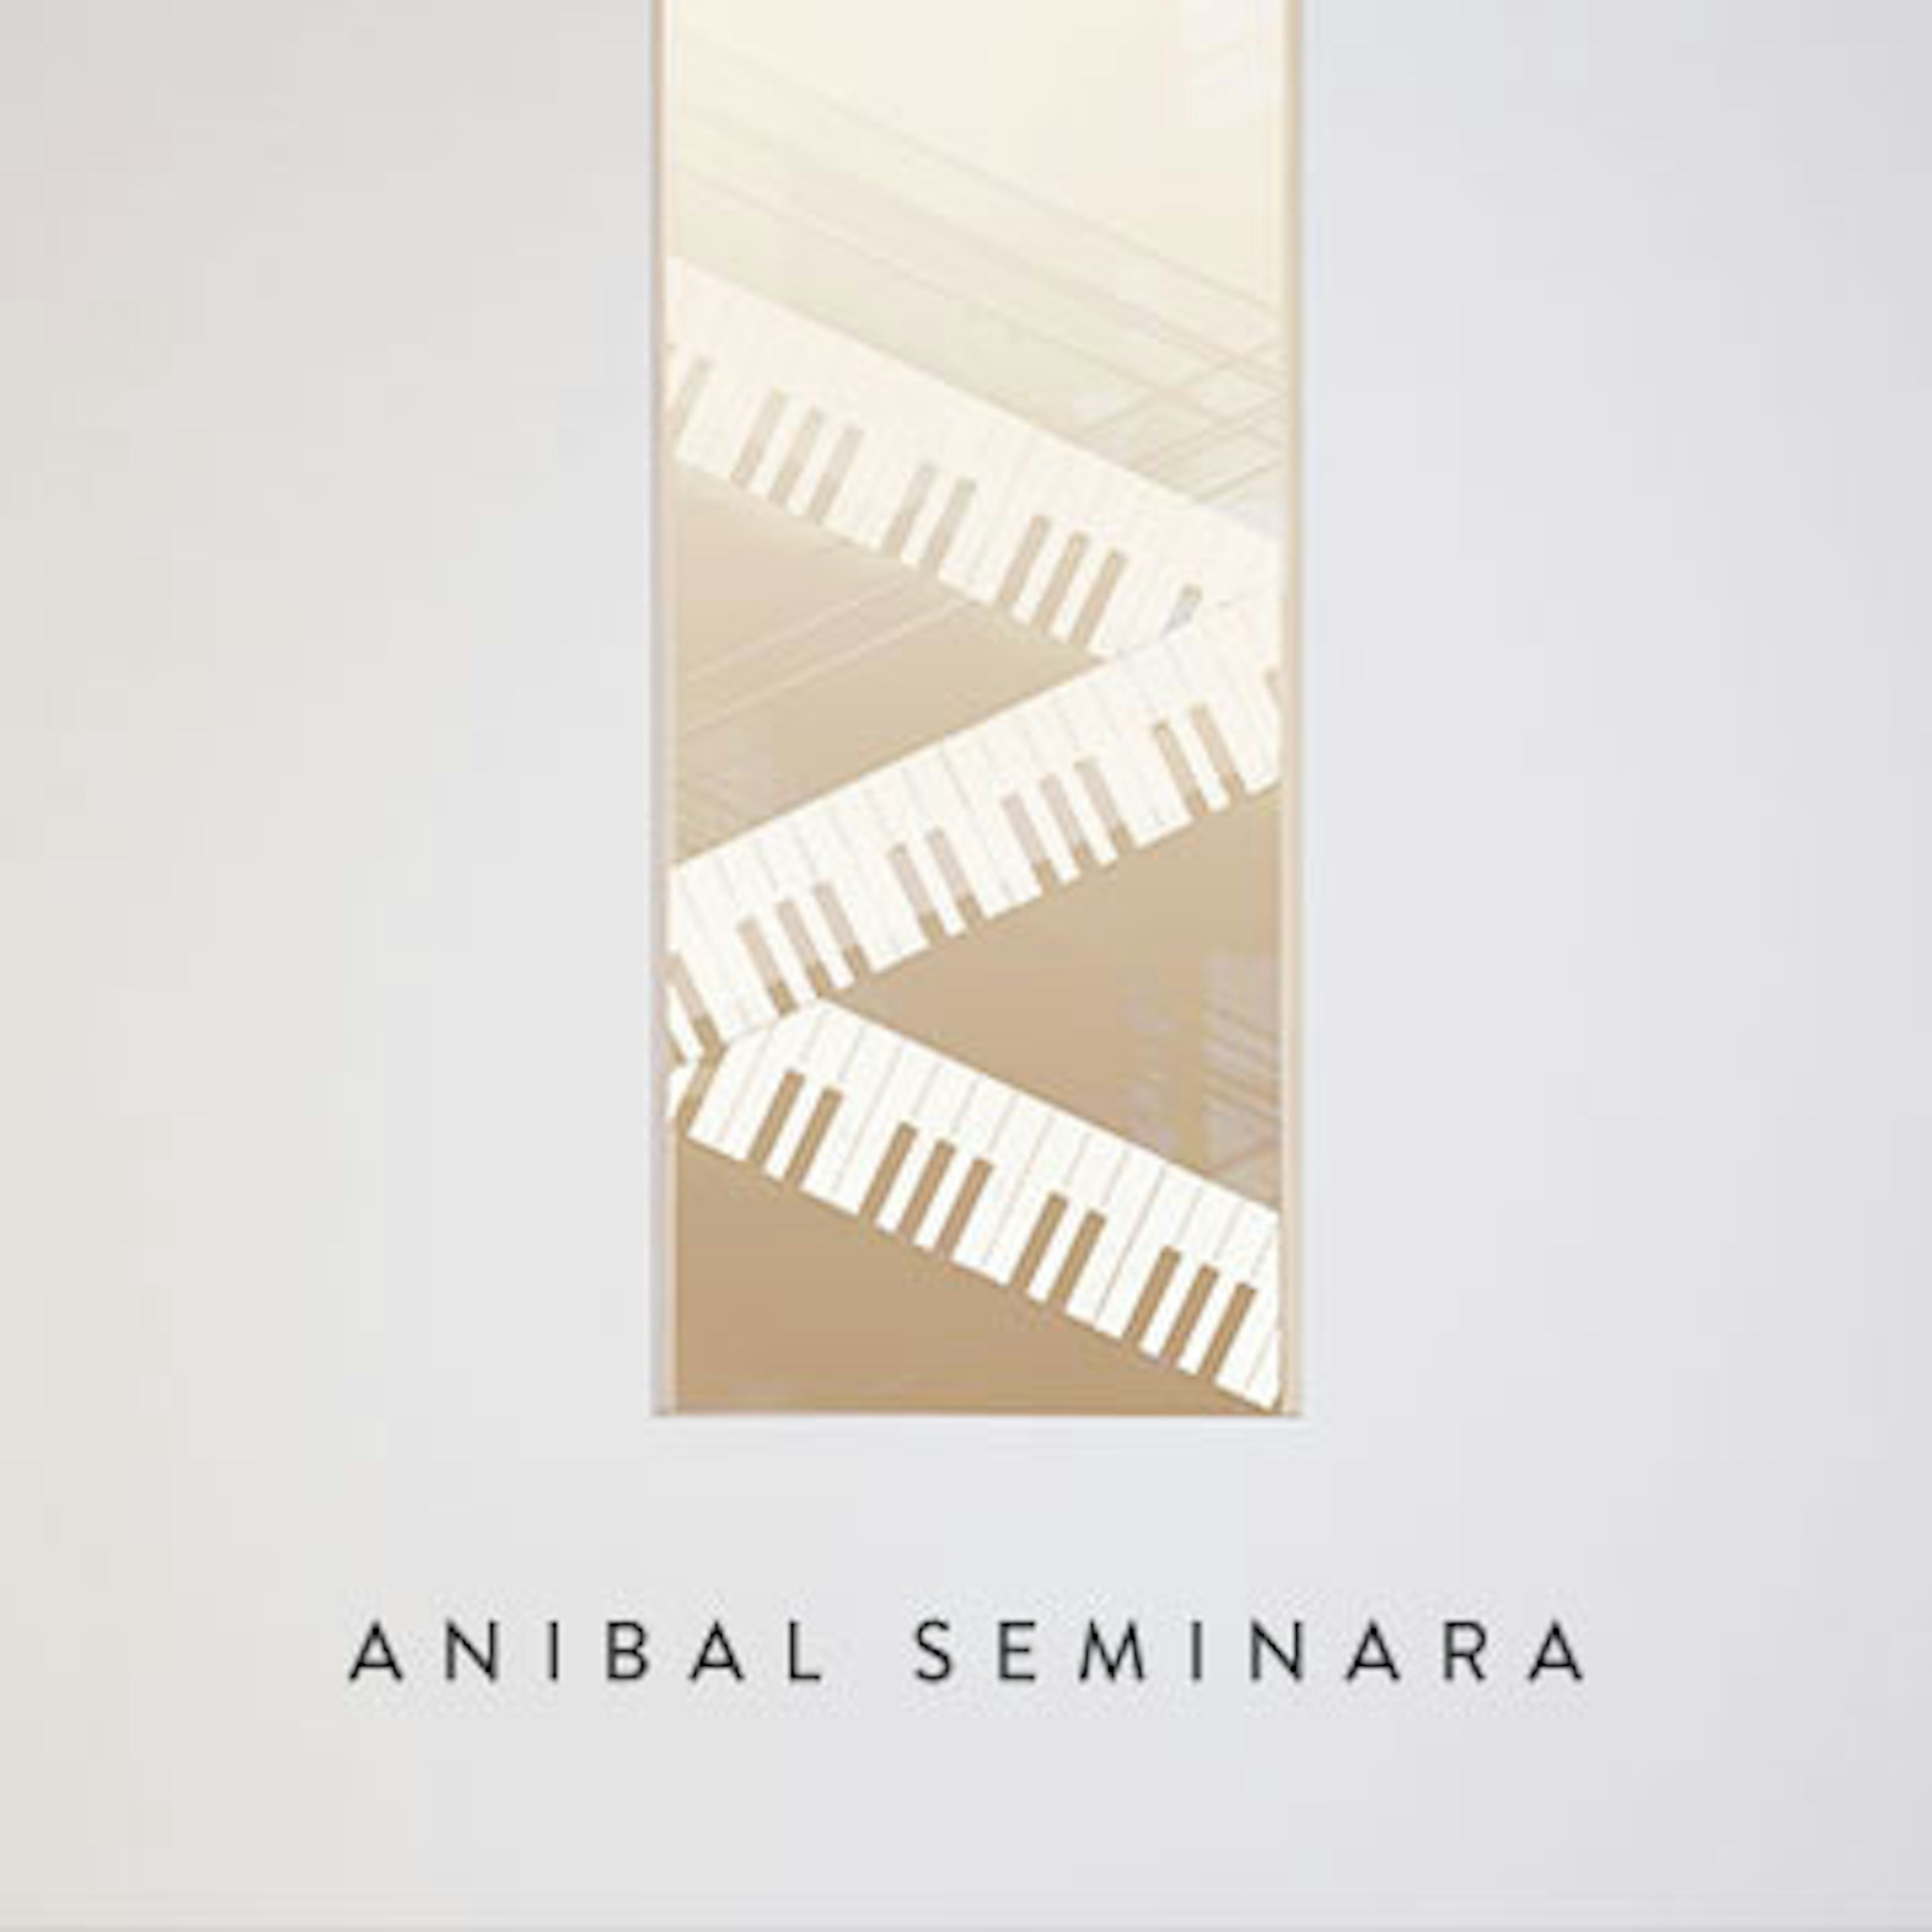 Anibal Seminara